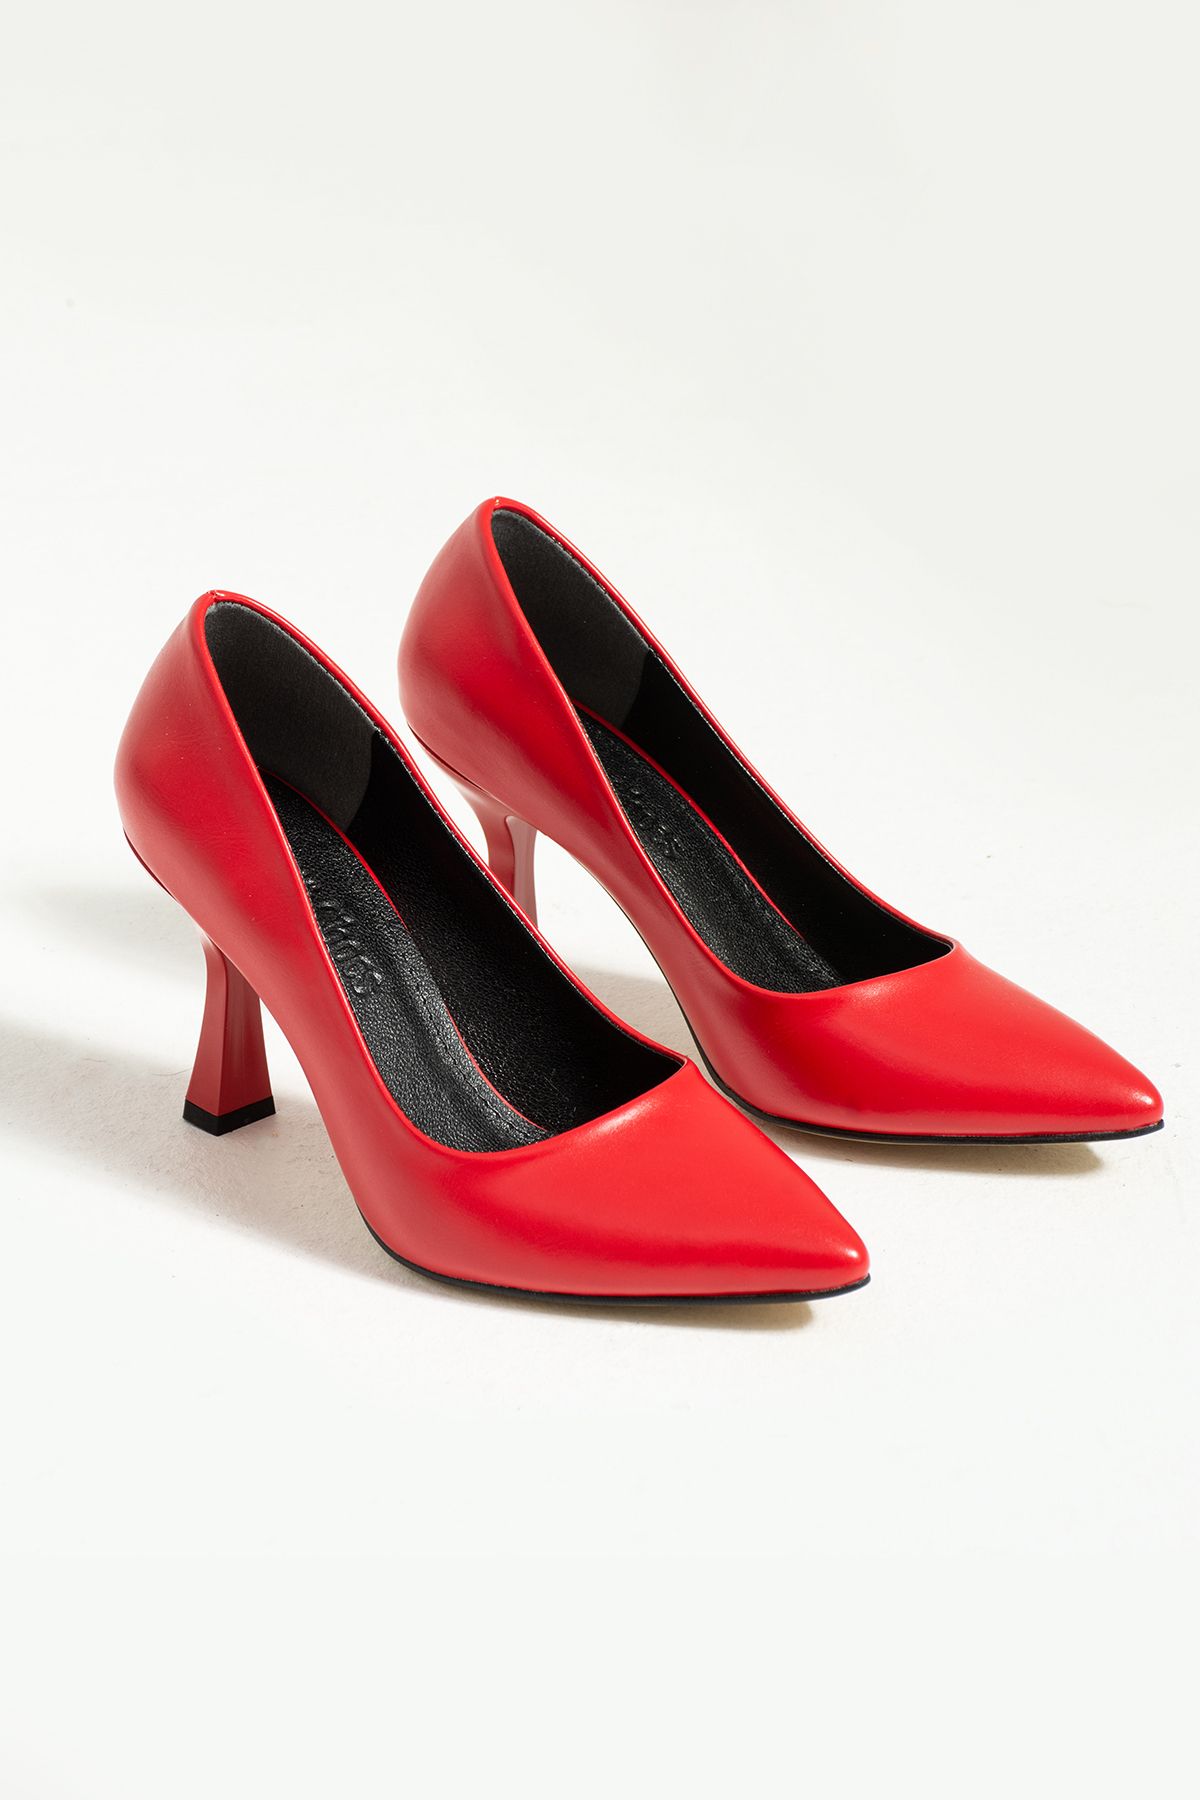 Güllü Shoes Kadın Topuklu Ayakkabı - Yüksek Topuklu Stiletto Rahat Şık Ve Ince Iş Ayakkabısı Kırmızı 8.5 cm